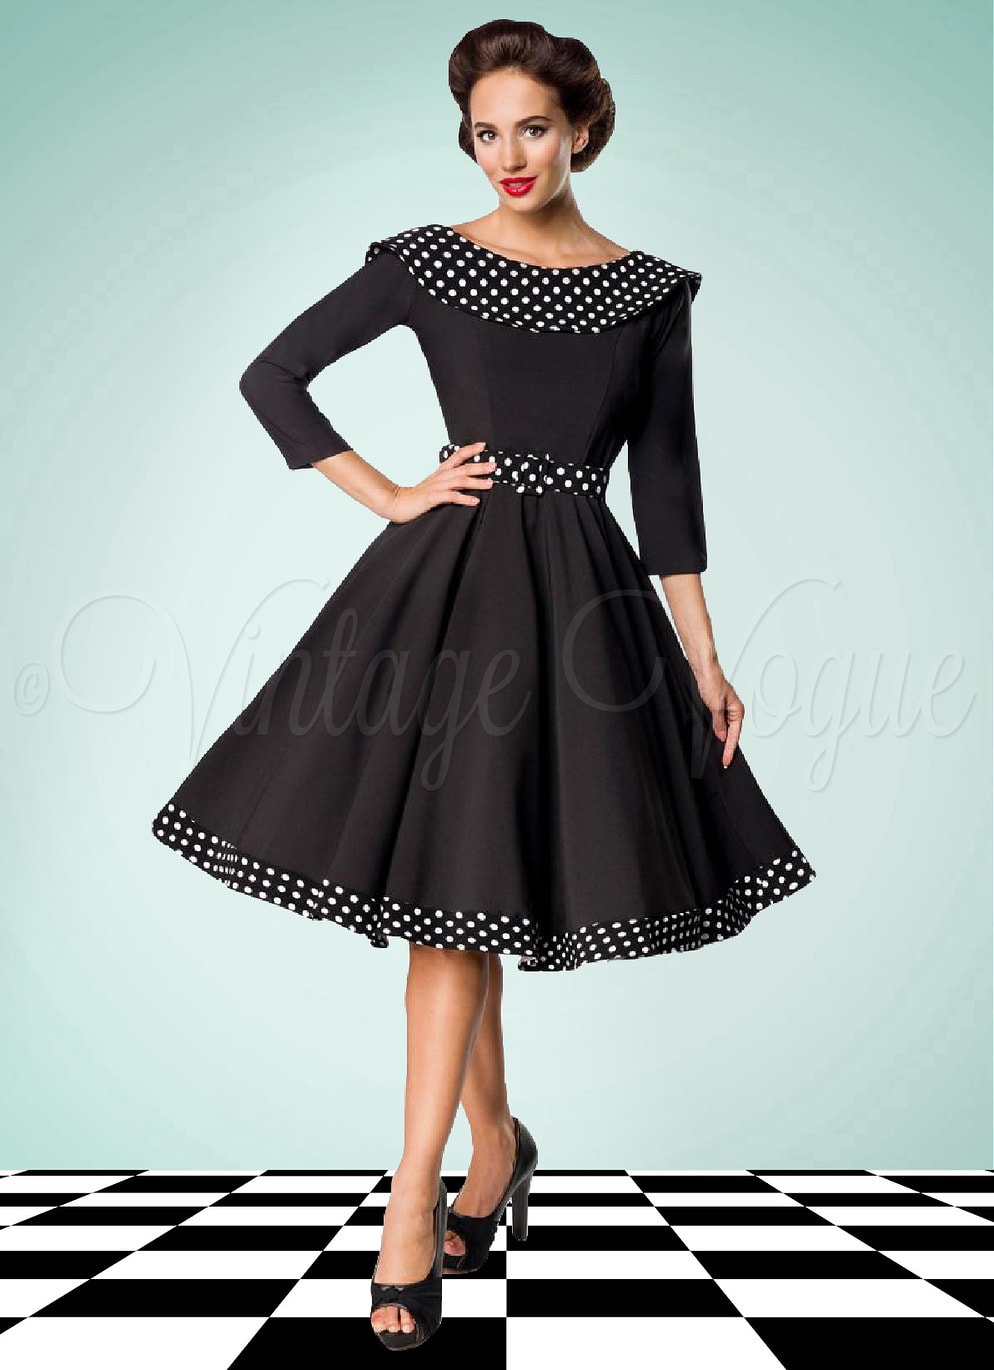 Belsira 50er Jahre Vintage Retro Swing Kleid mit Polka Punkte in Schwarz Petticoat Damen Damenkleid Winterkleid elegant Langarm lange Ärmel Abendkleid Dots gepunktet tupfen